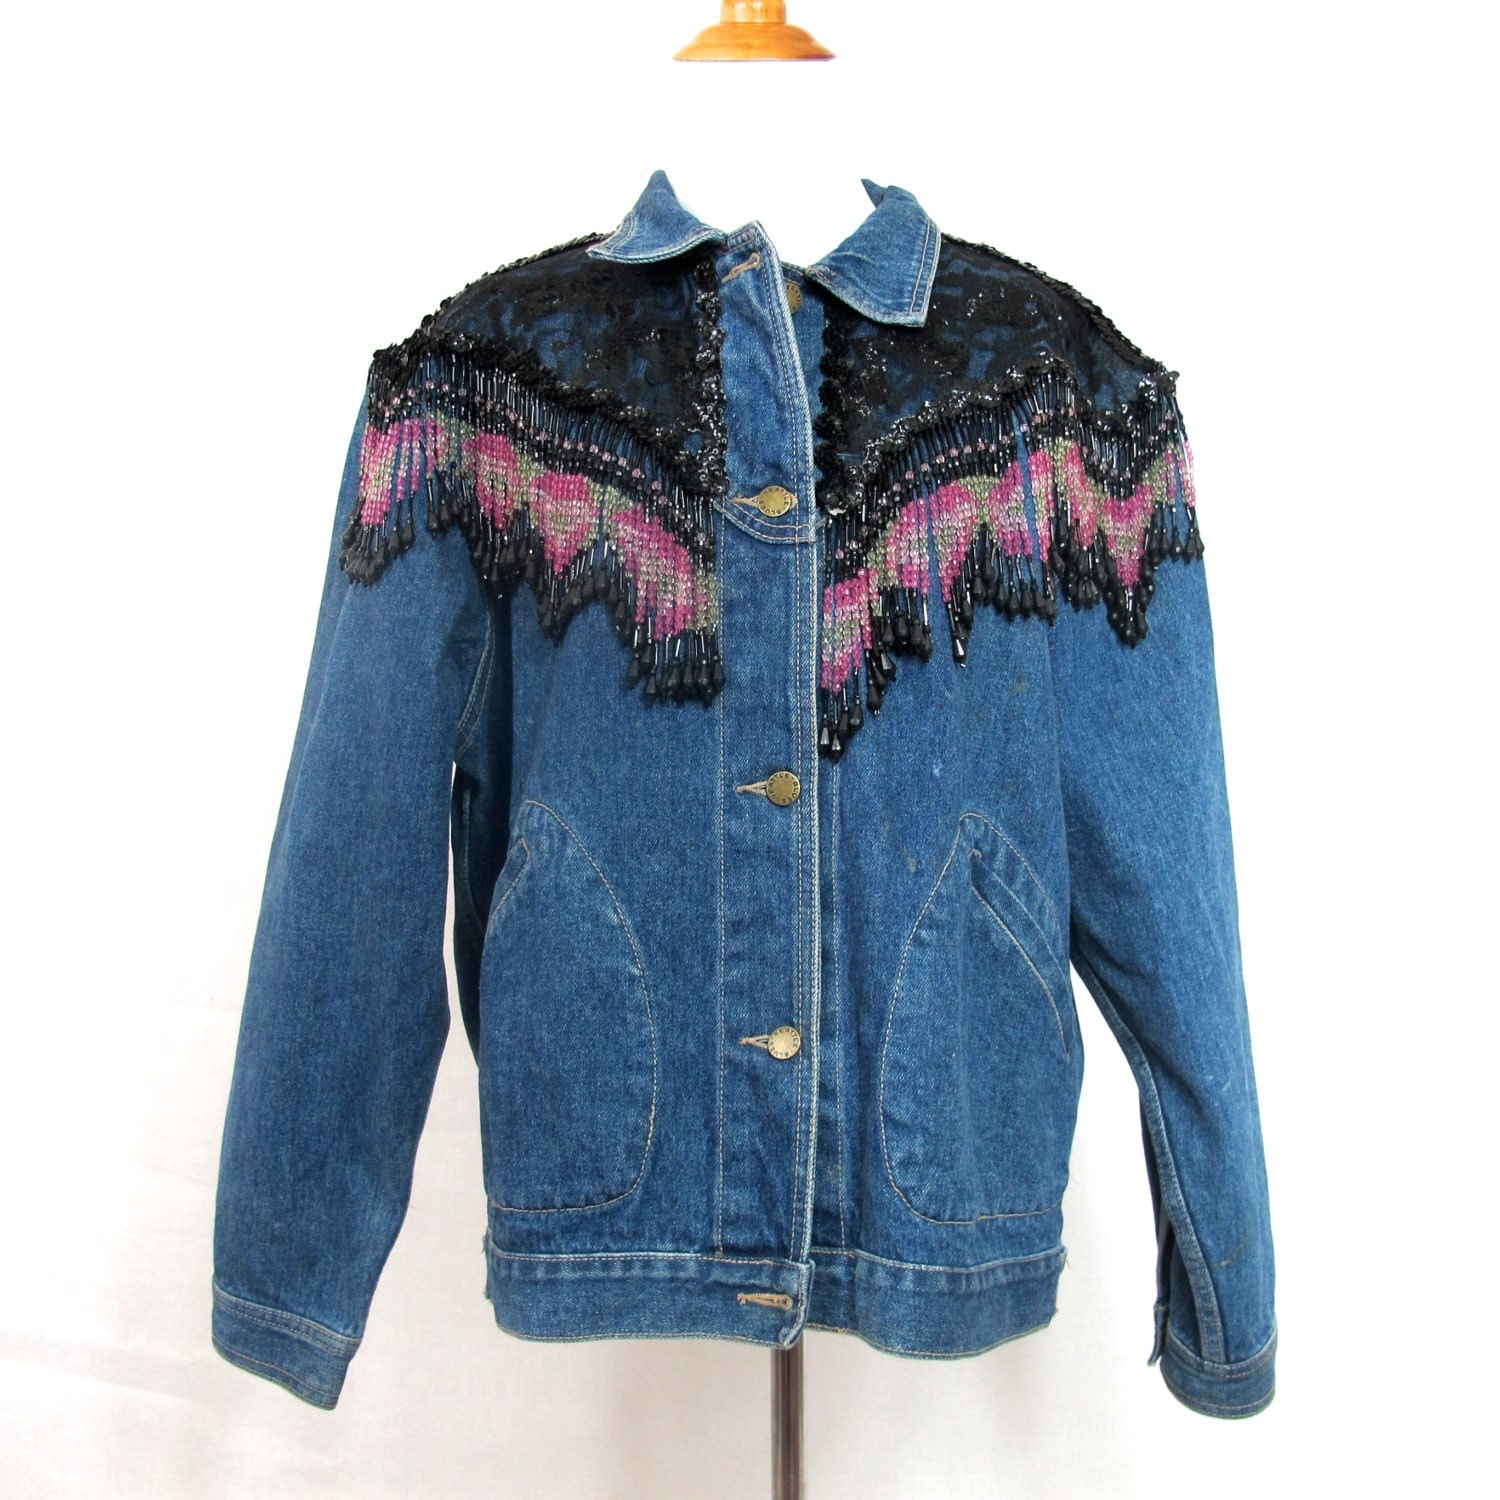 Vintage/Handmade 80s Fringe Denim Jacket by SpringFeverVintage